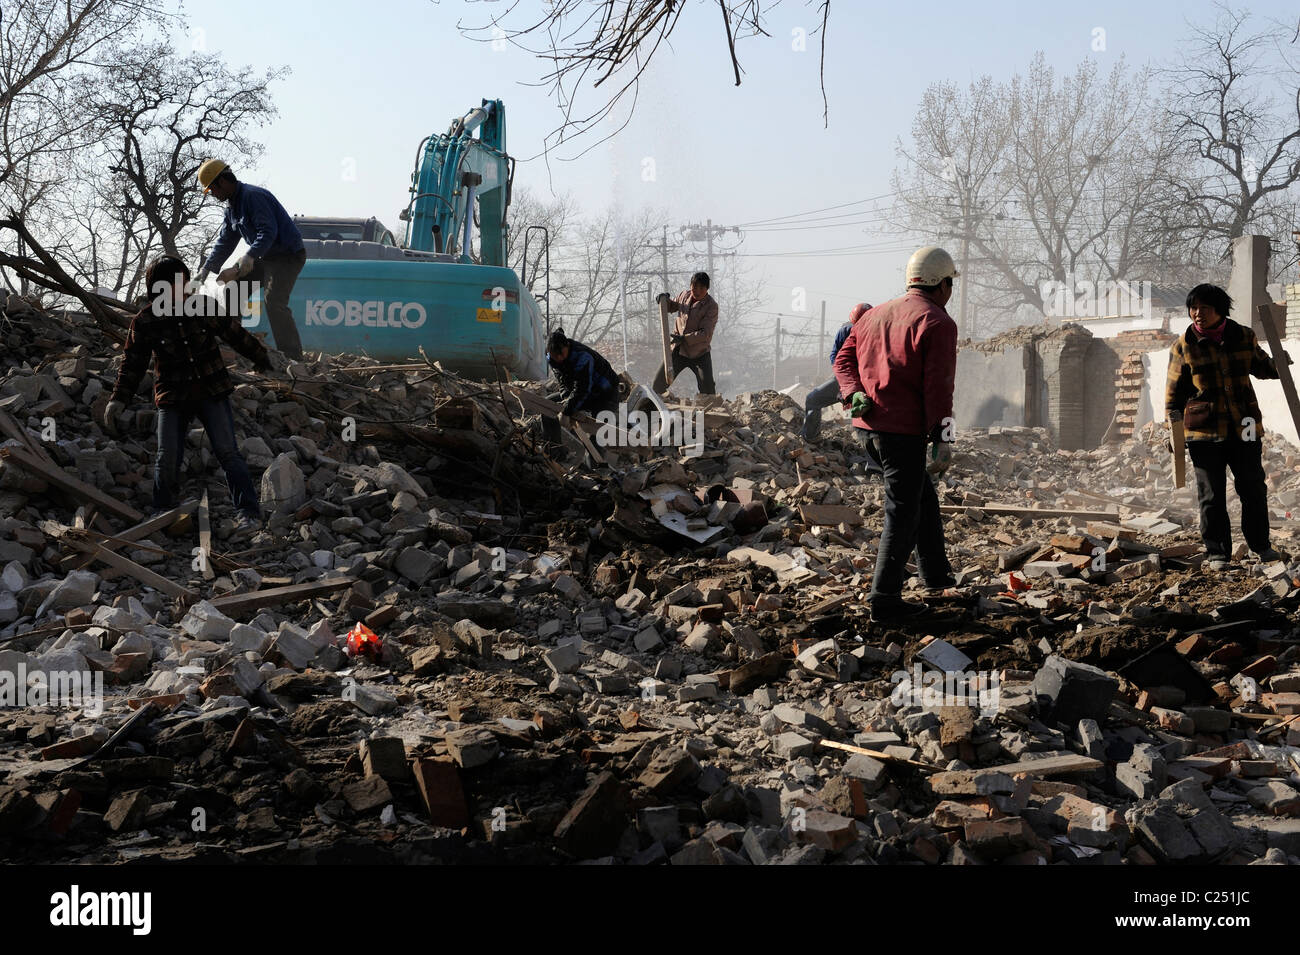 Les gens recueillir des matériaux de recyclage à partir de ruines de maisons démolies dans le centre de Pékin, Chine.20-Mar-2011 Banque D'Images